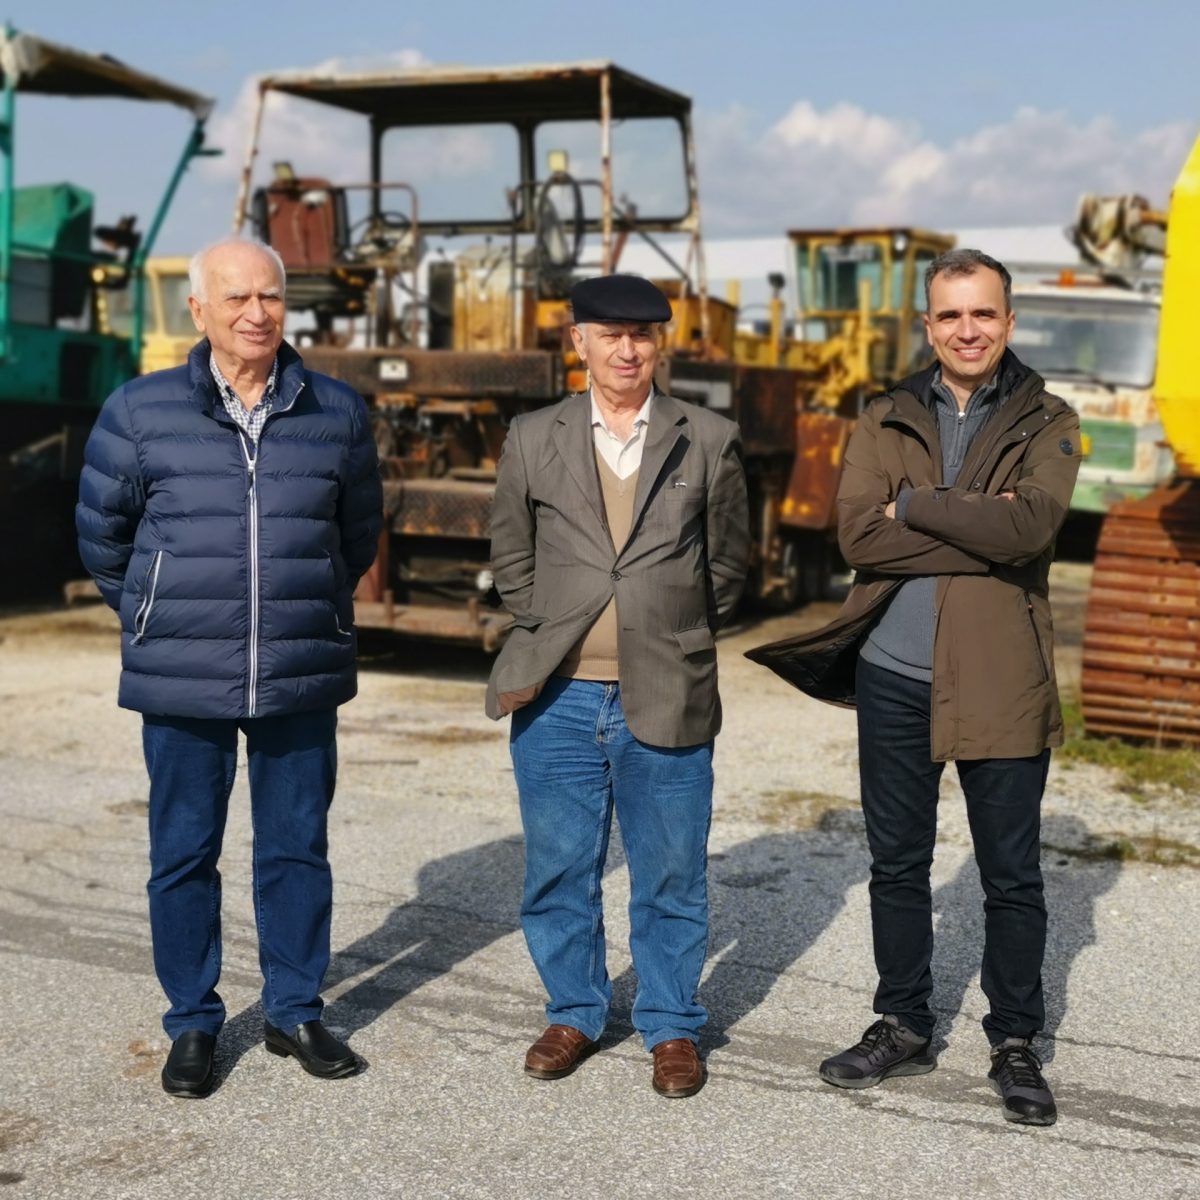 Die TUM Alumni Georgios Piatidis, Athanasios Piatidis und Alexandros Piatidis (v.l.n.r.) in ihrem Baumaschinenpark.